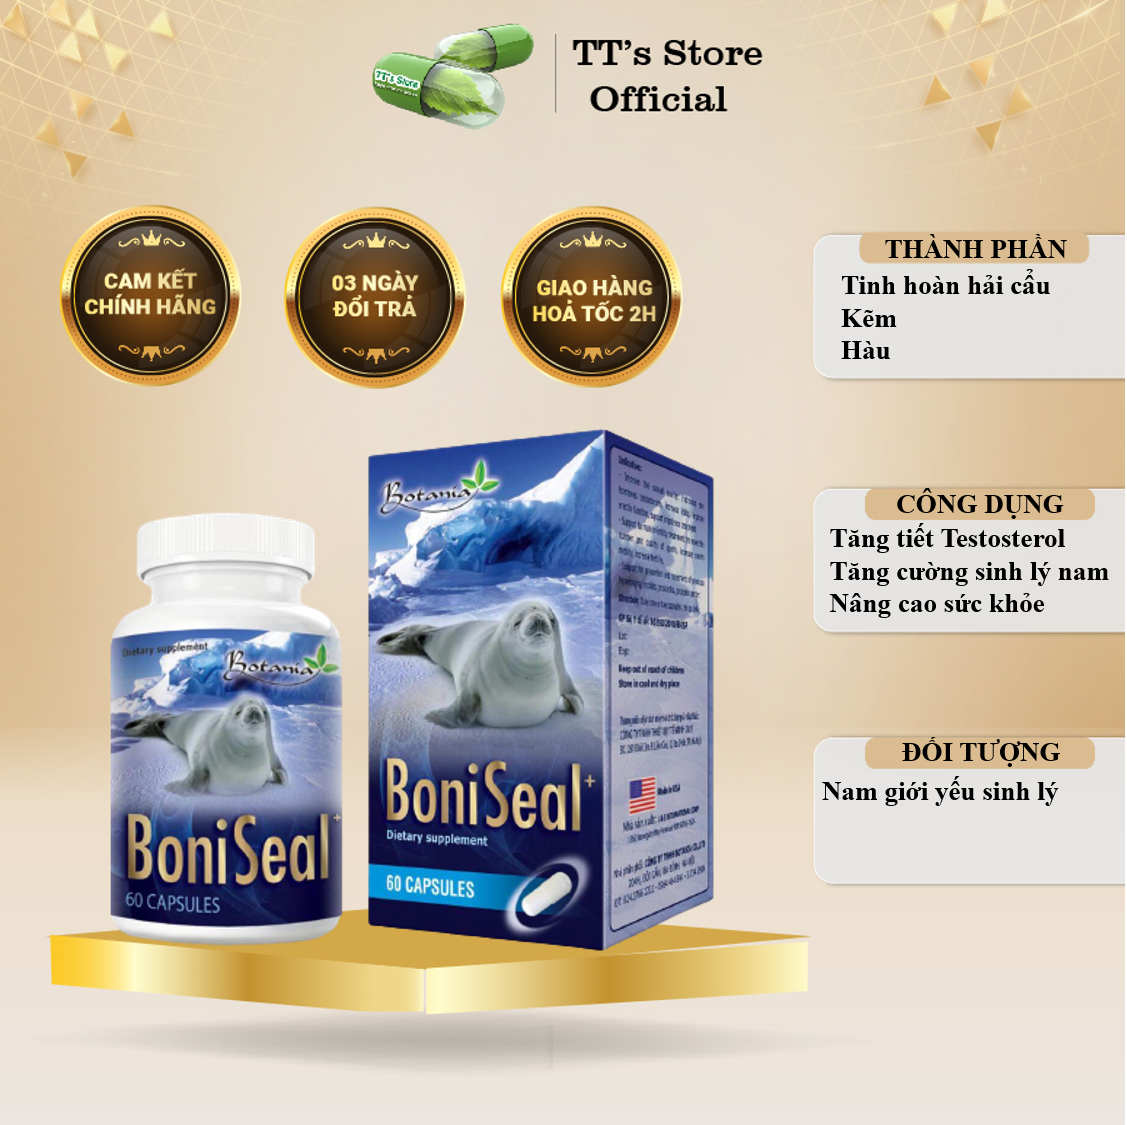 BONISEAL +- Boni Seal Hỗ trợ tăng cường sinh lực nam, bổ thận